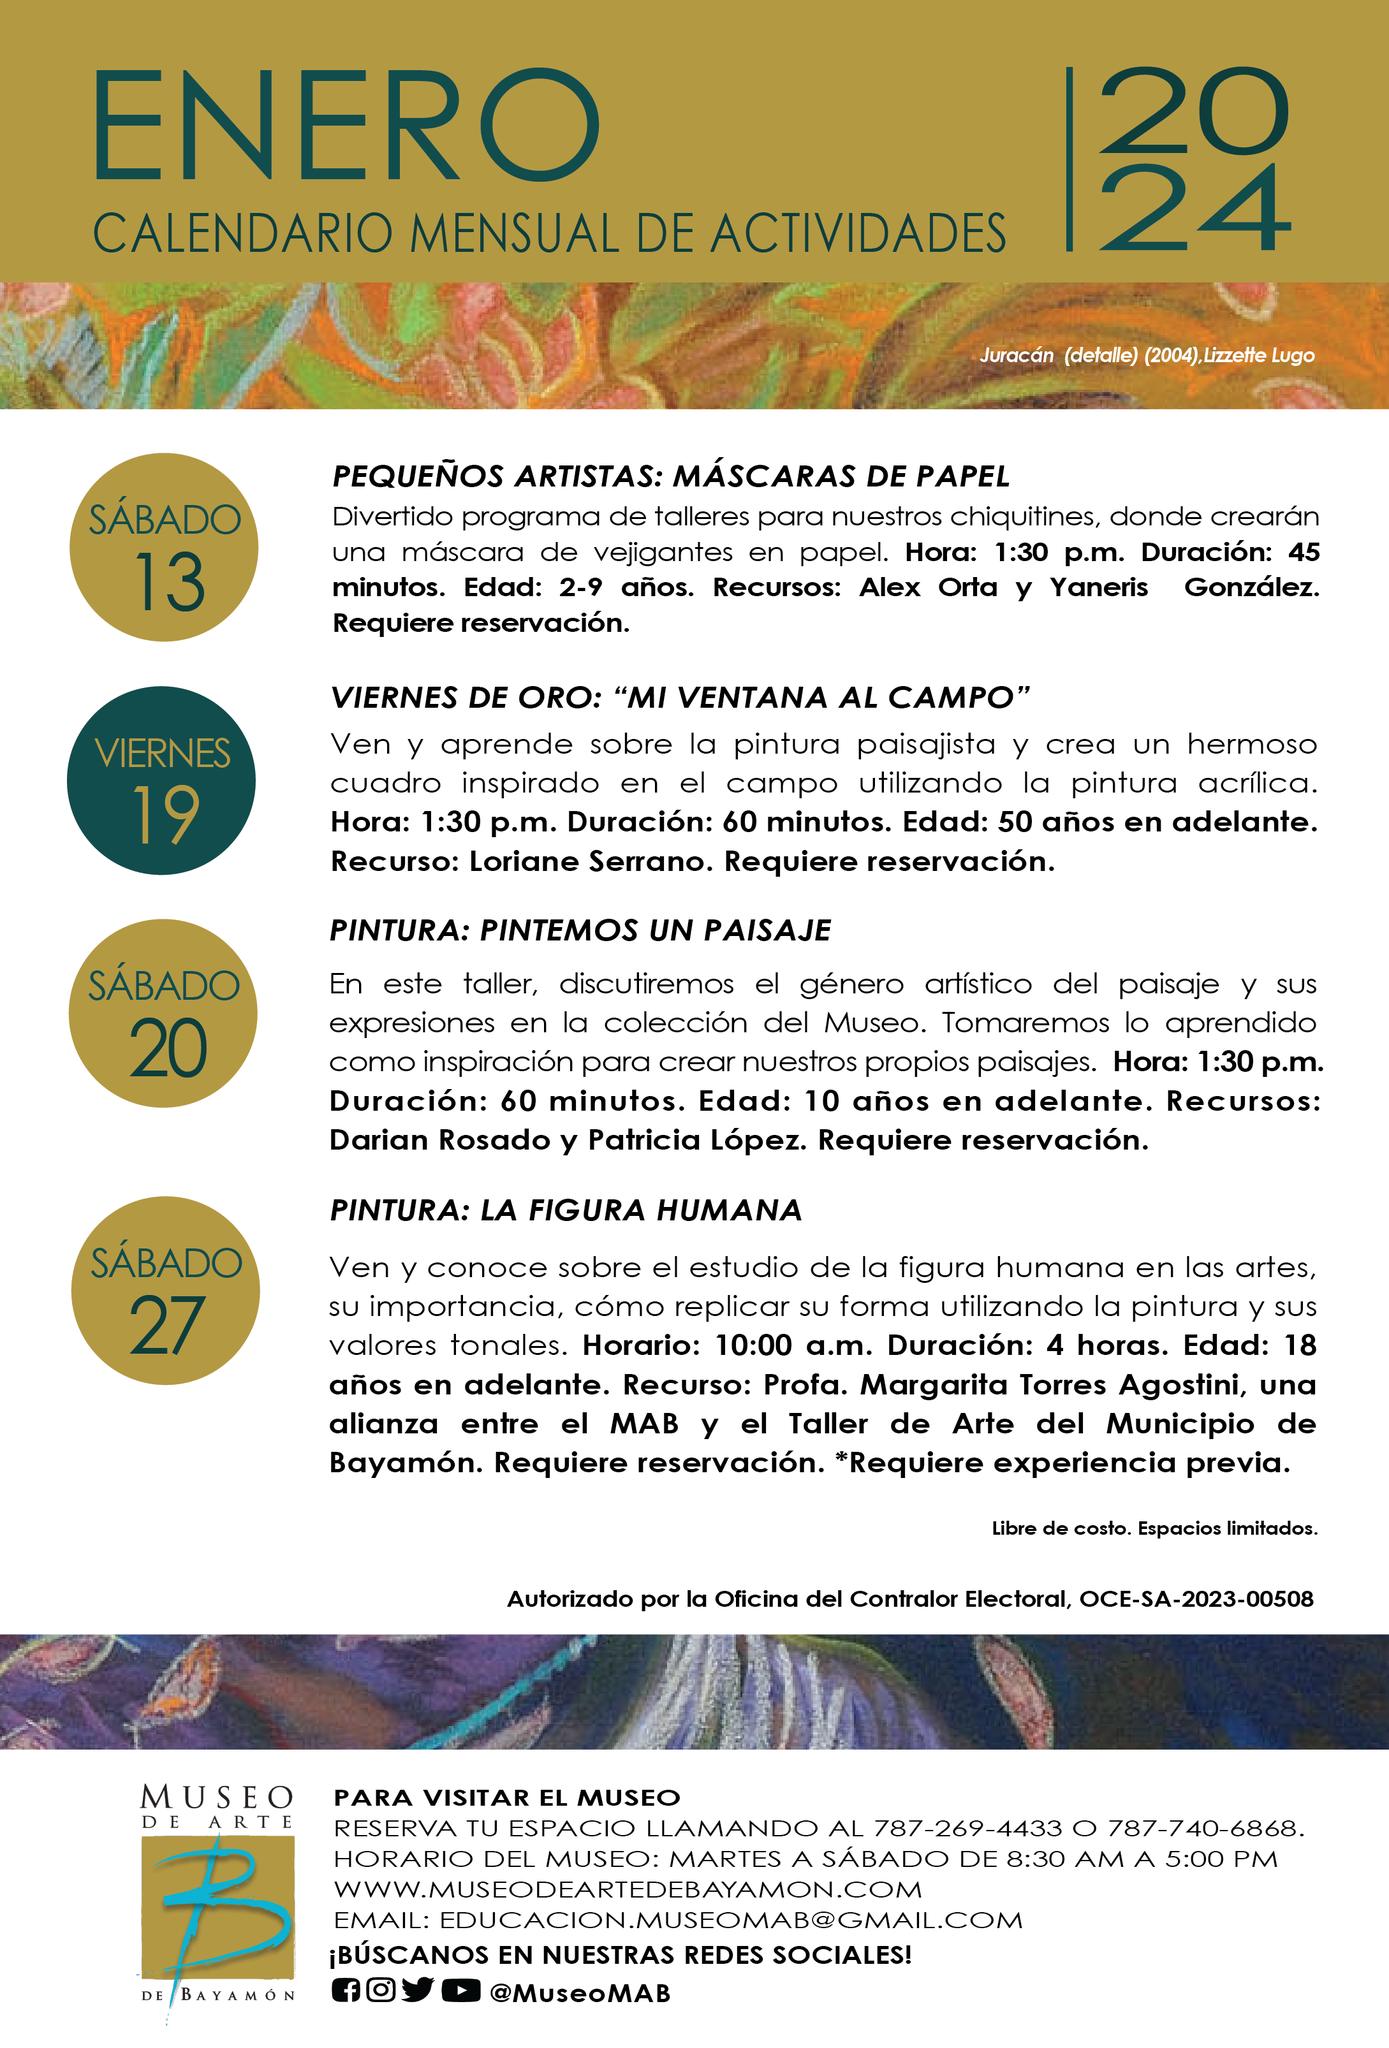 Calendario de Eventos para el Museo de Arte de Bayamon para el mes de Enero 2024